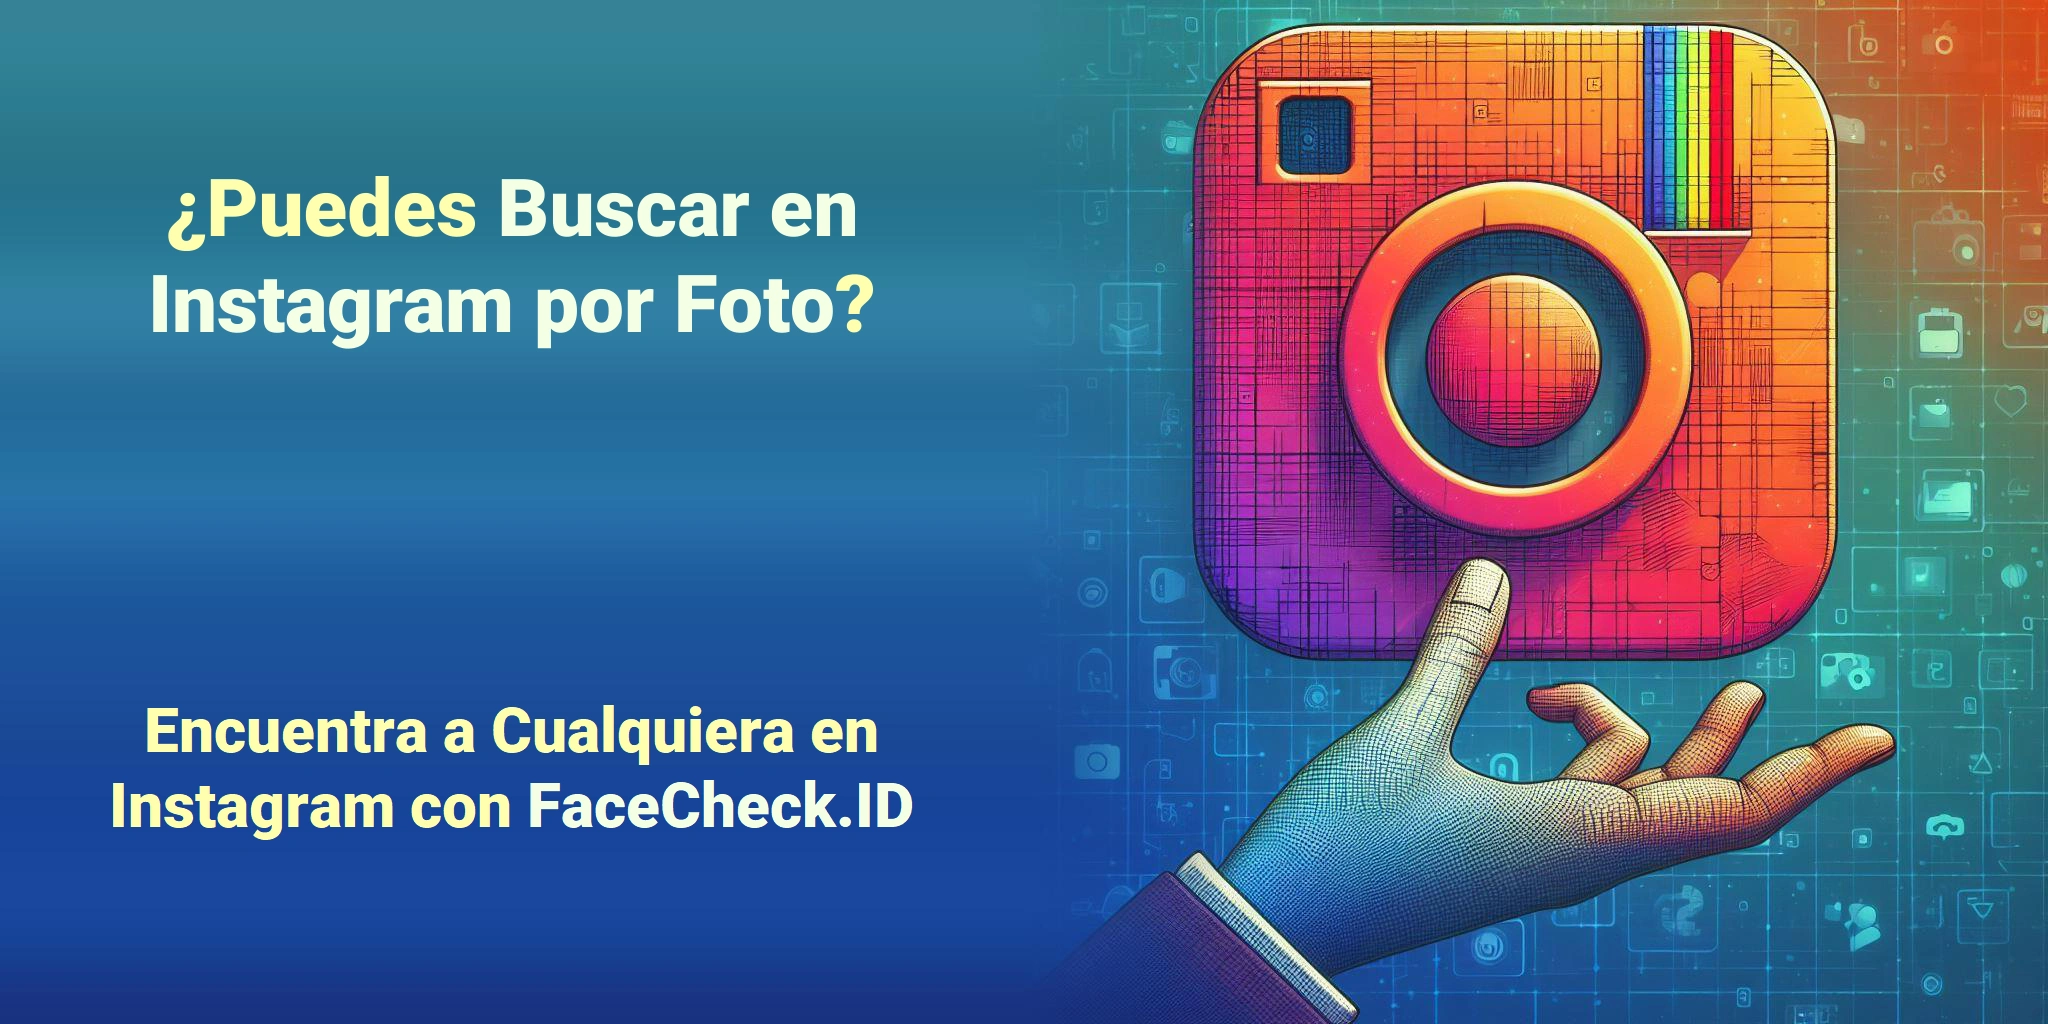 ¿Puedes Buscar en Instagram por Foto? Encuentra a Cualquiera en Instagram con FaceCheck.ID